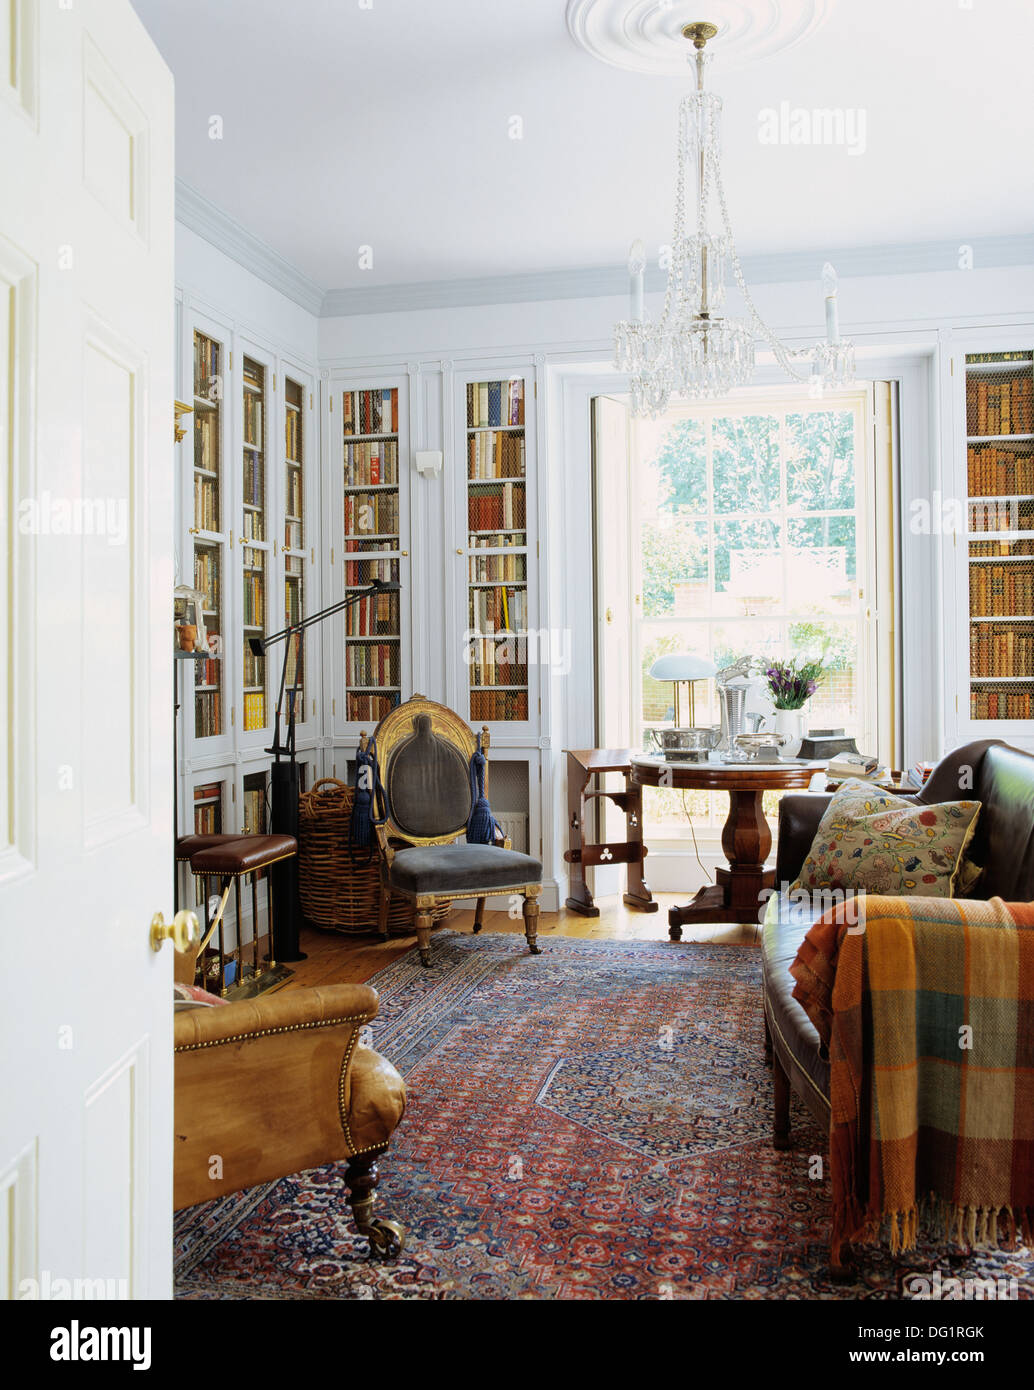 Living Room Bookcases Bookshelf Ideas How To Arrange Bookshelves